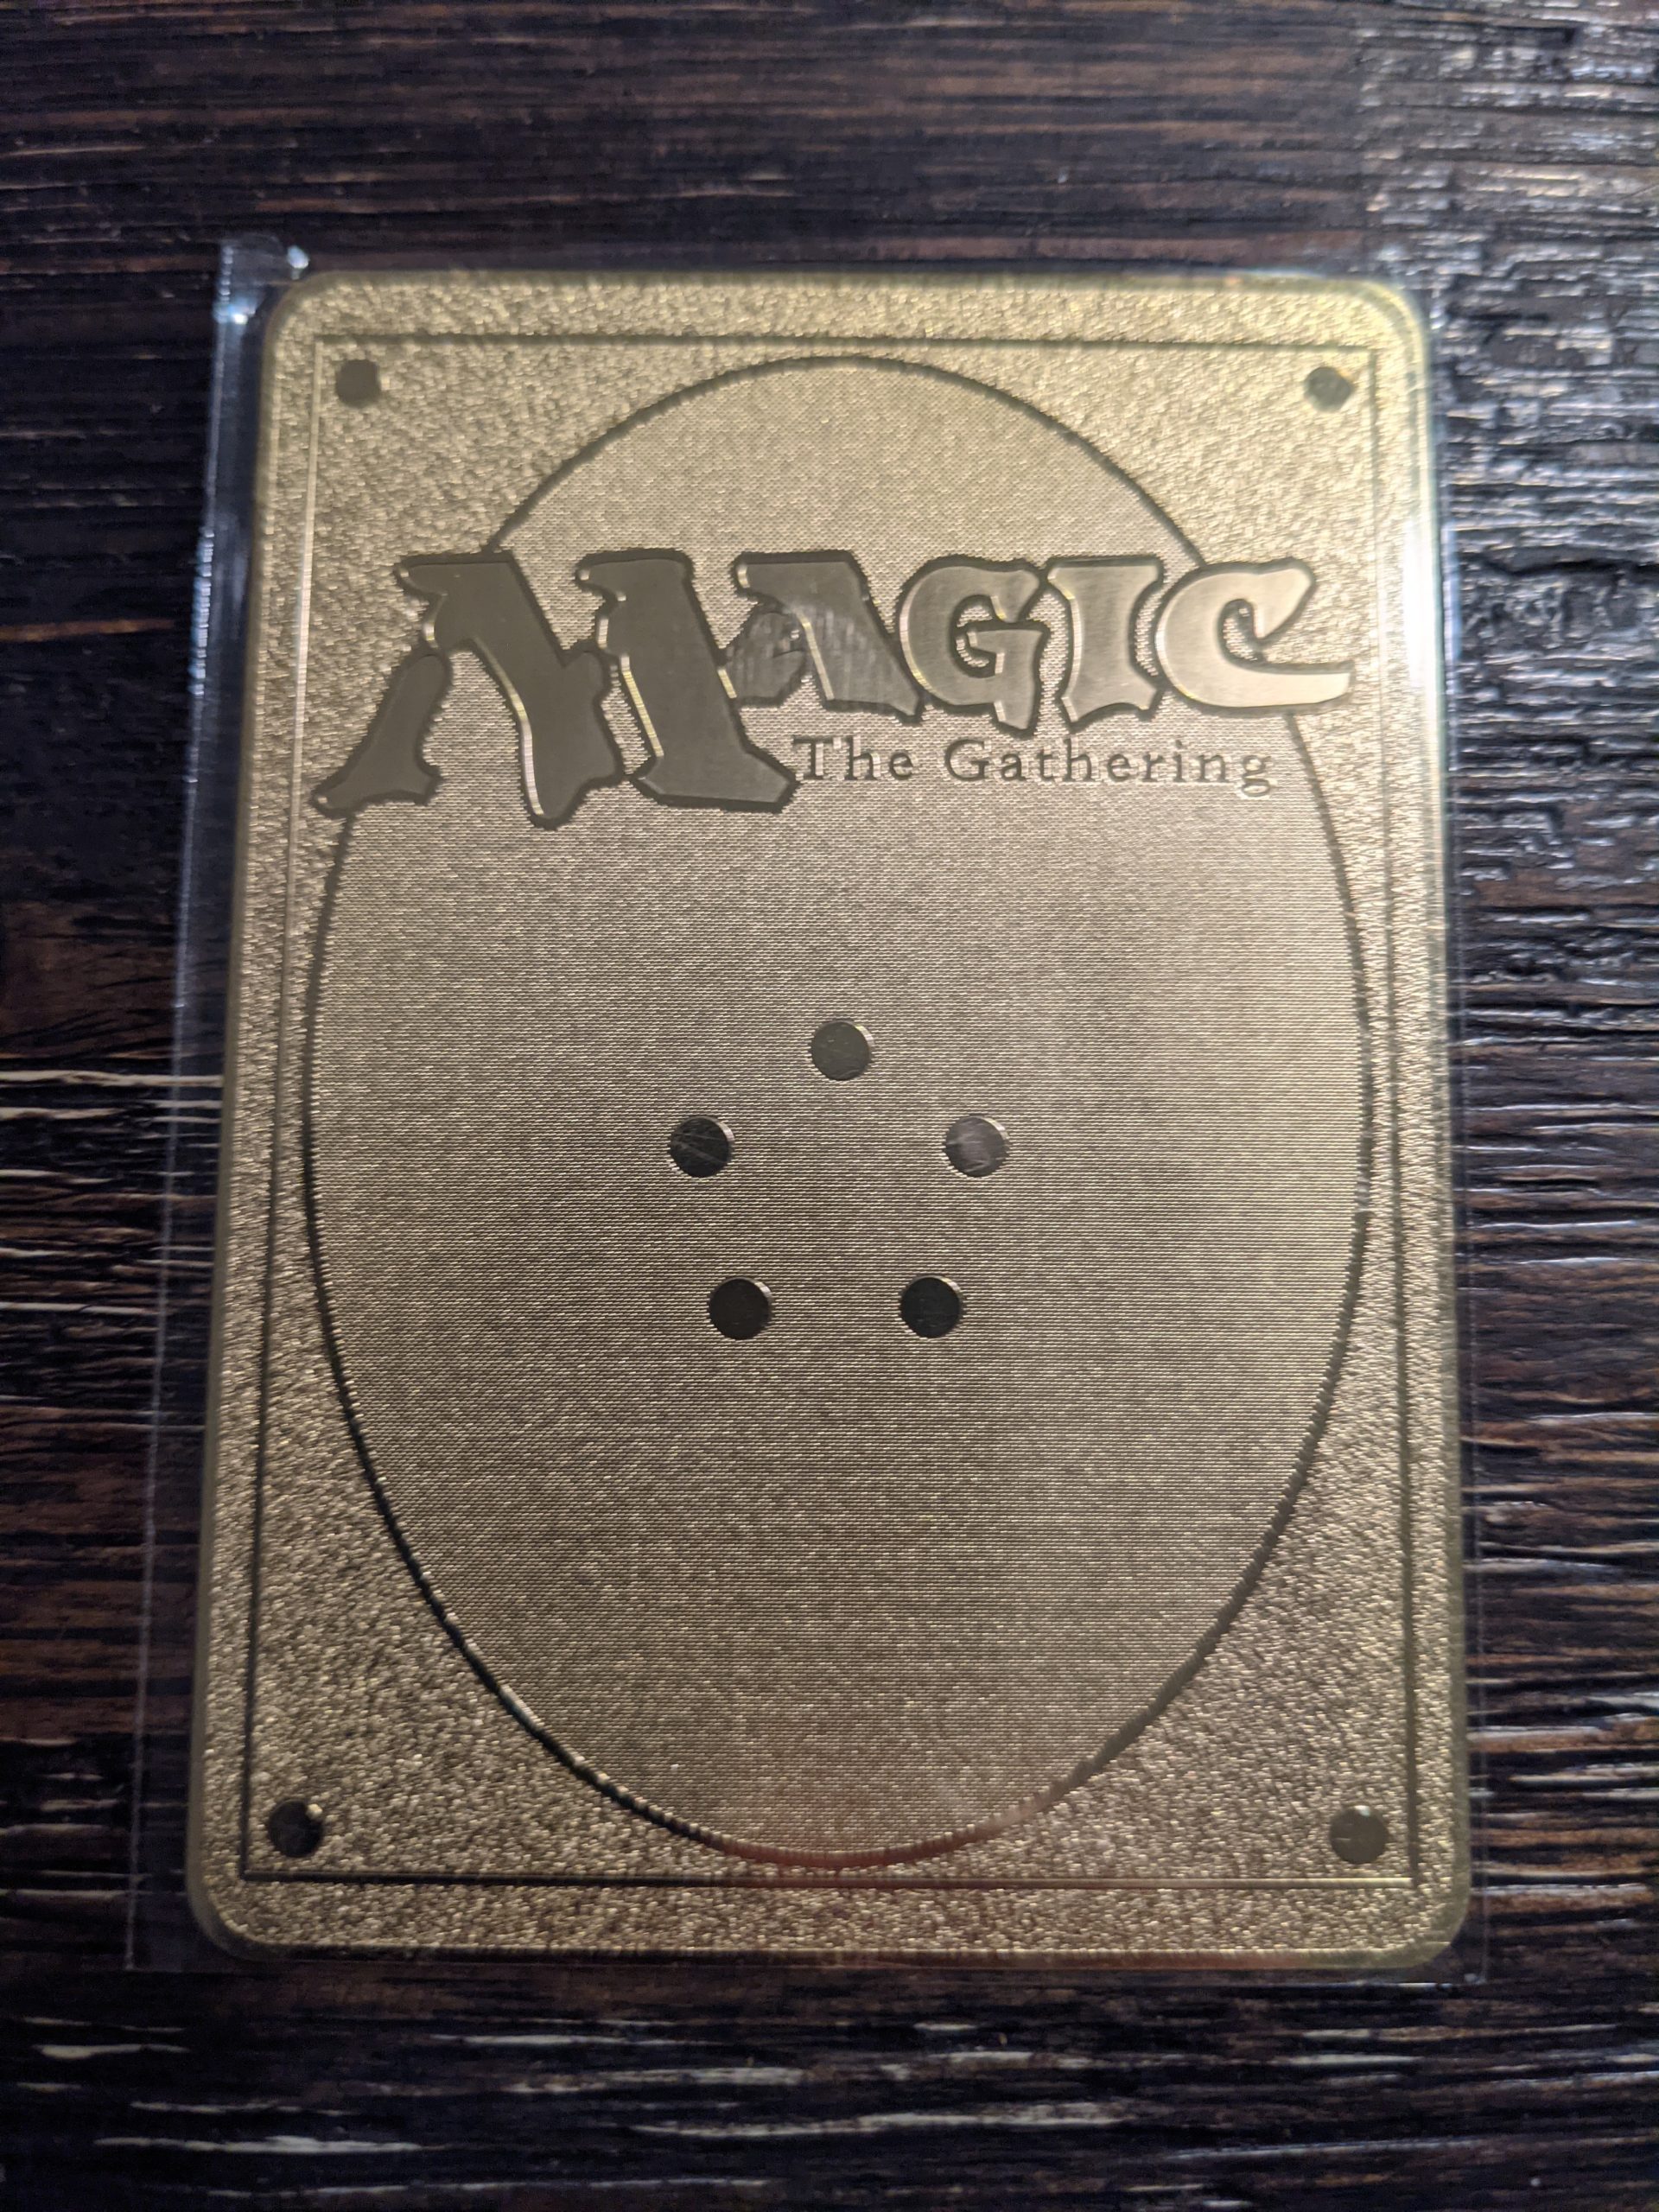 ☆☆☆ Black Lotus Magic The Gathering Karte Metall Gold English ☆☆☆